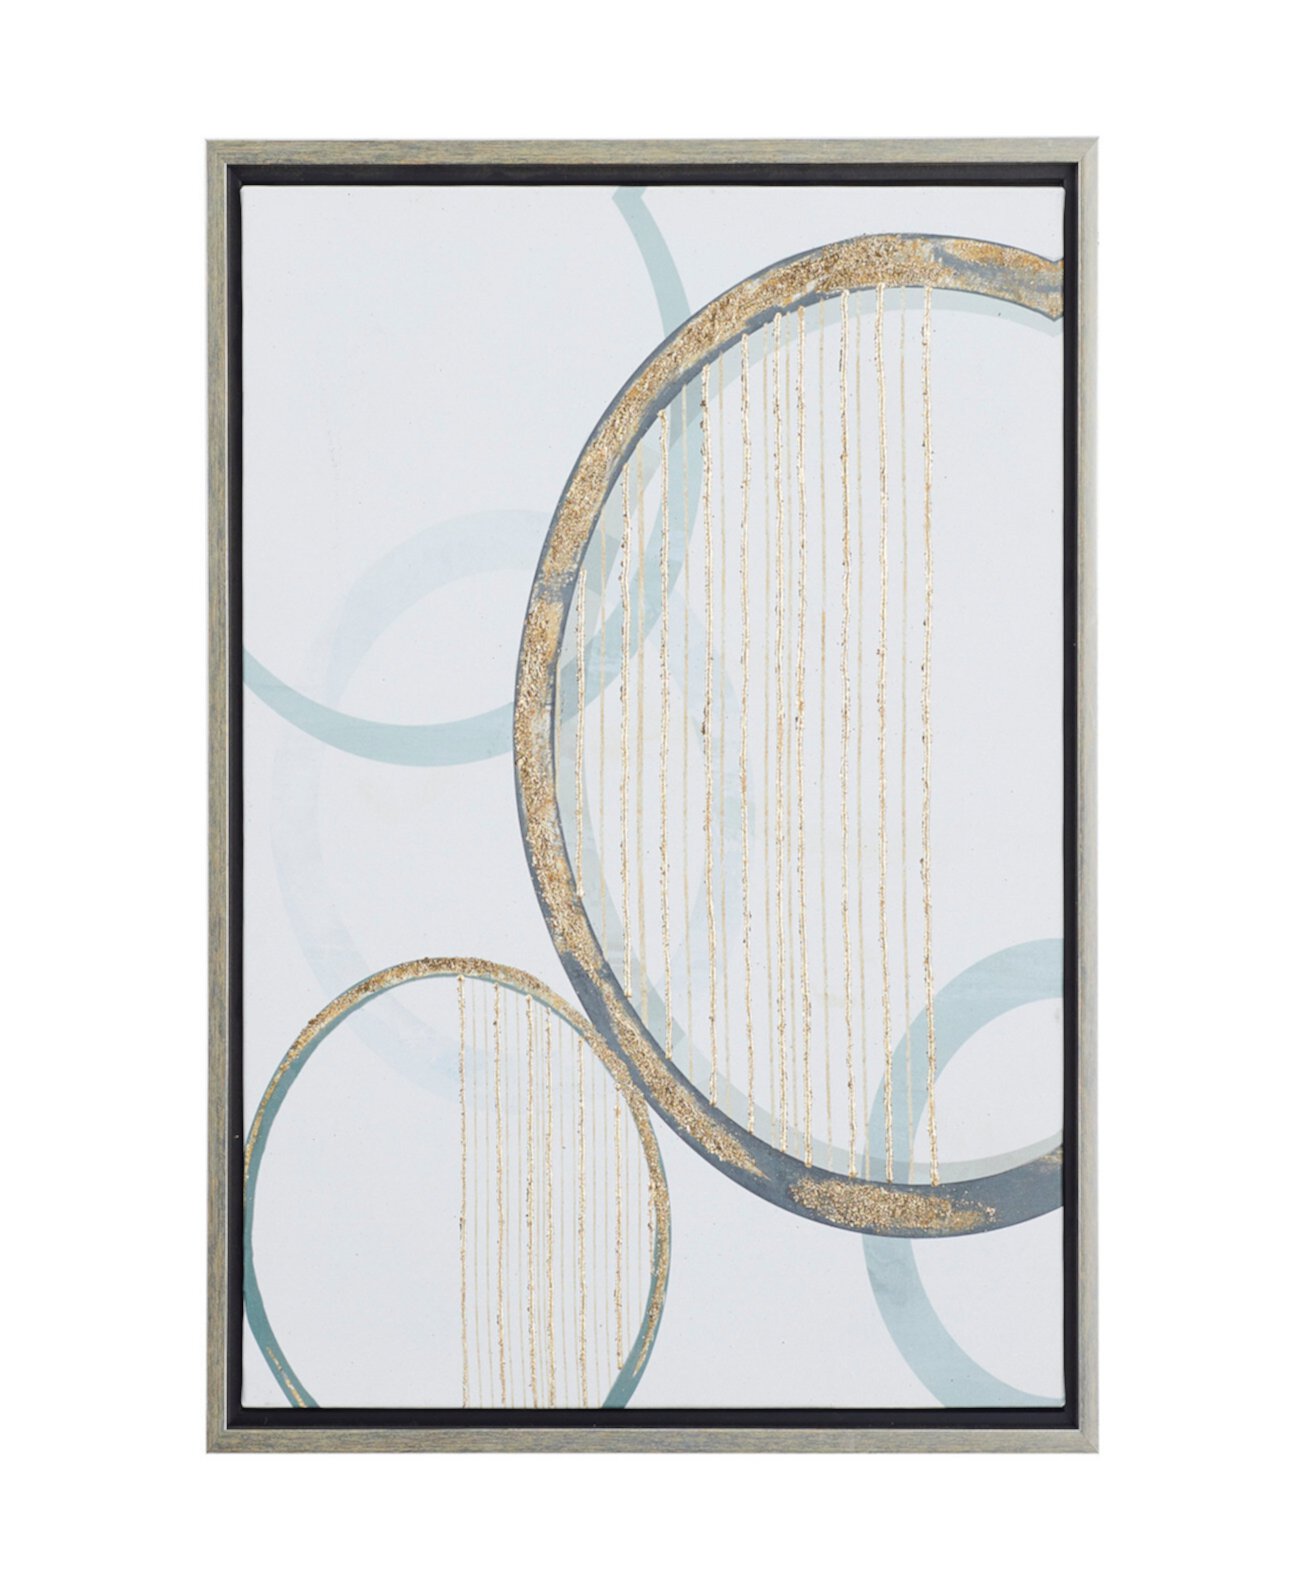 Абстрактное настенное искусство в виде кругов на холсте с серебристой рамкой, 20 дюймов x 1 дюйм x 24 дюйма Rosemary Lane